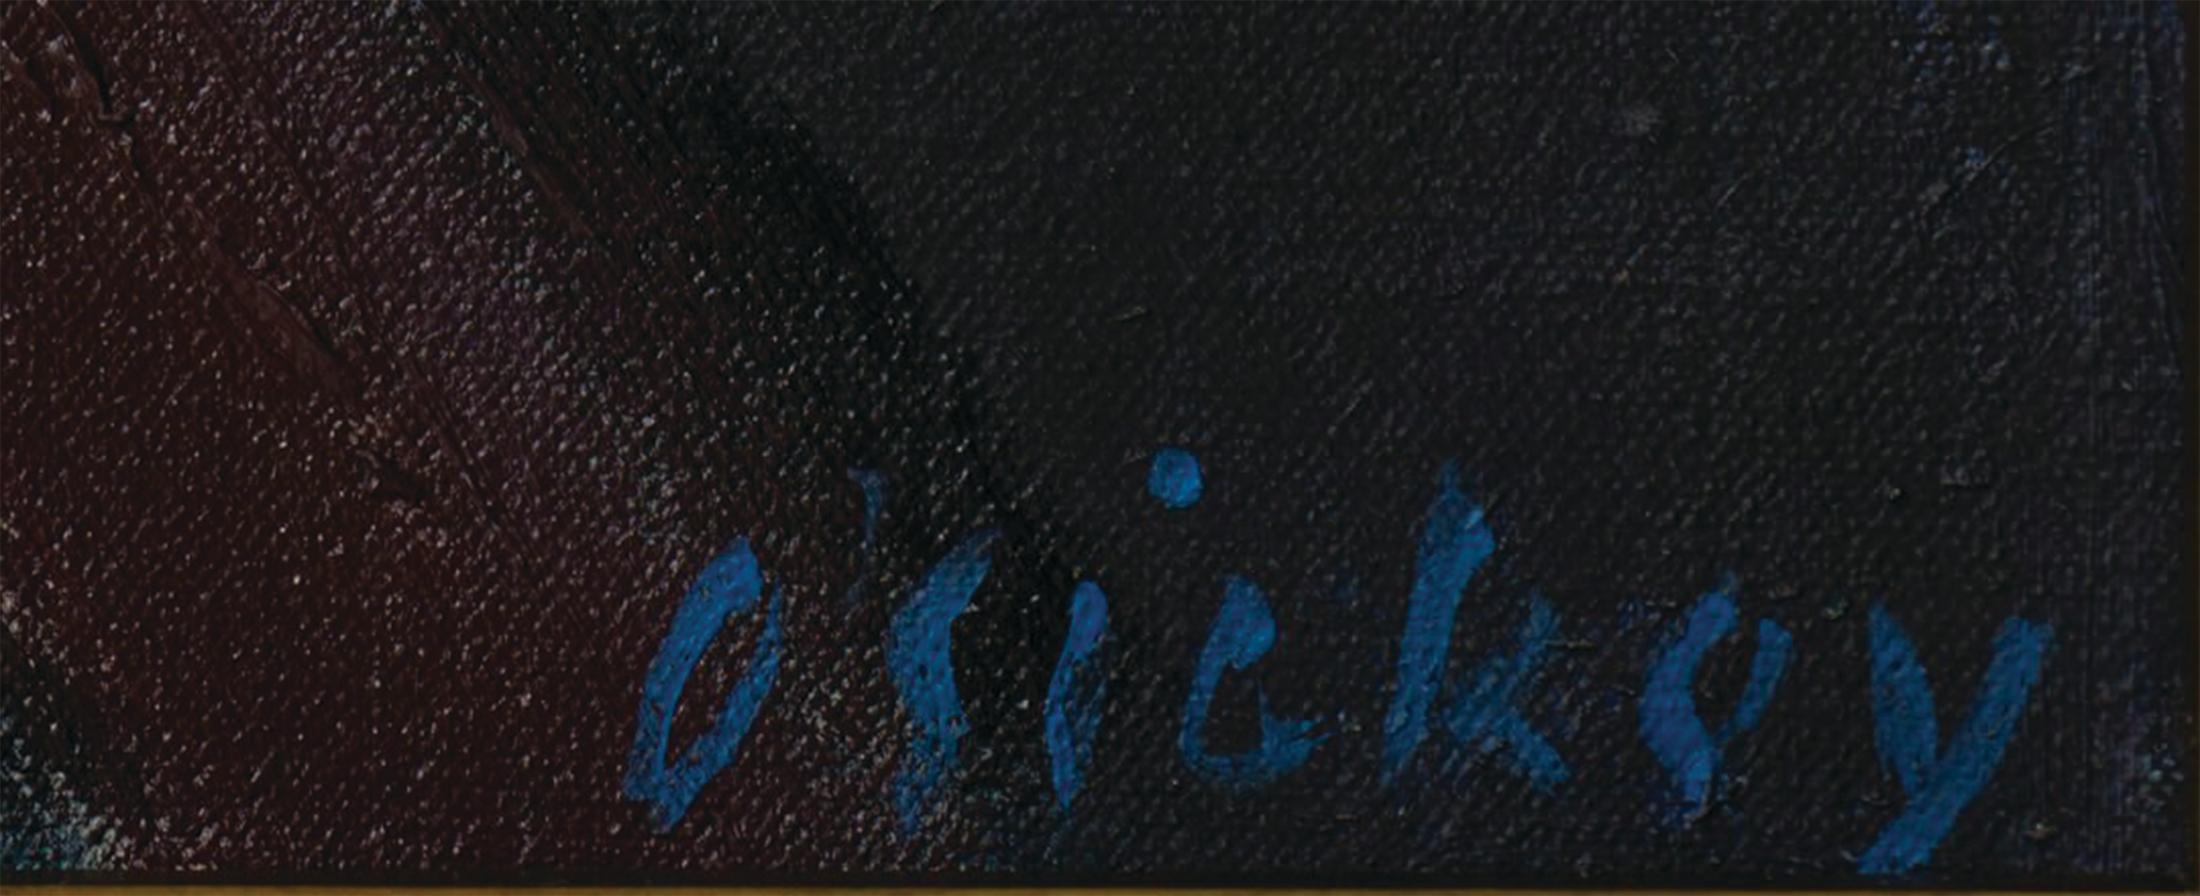 Œuvre vendue au profit du CLEVELAND INSTITUTE OF ART

Joseph B. O'Sickey (Américain, 1918-2013)
Nature morte avec bouteille de vin, c. 1980
Huile sur toile 
Signé en bas à droite 
24 x 30 pouces

Joseph O'Sickey, né à Détroit en 1918, a été peintre